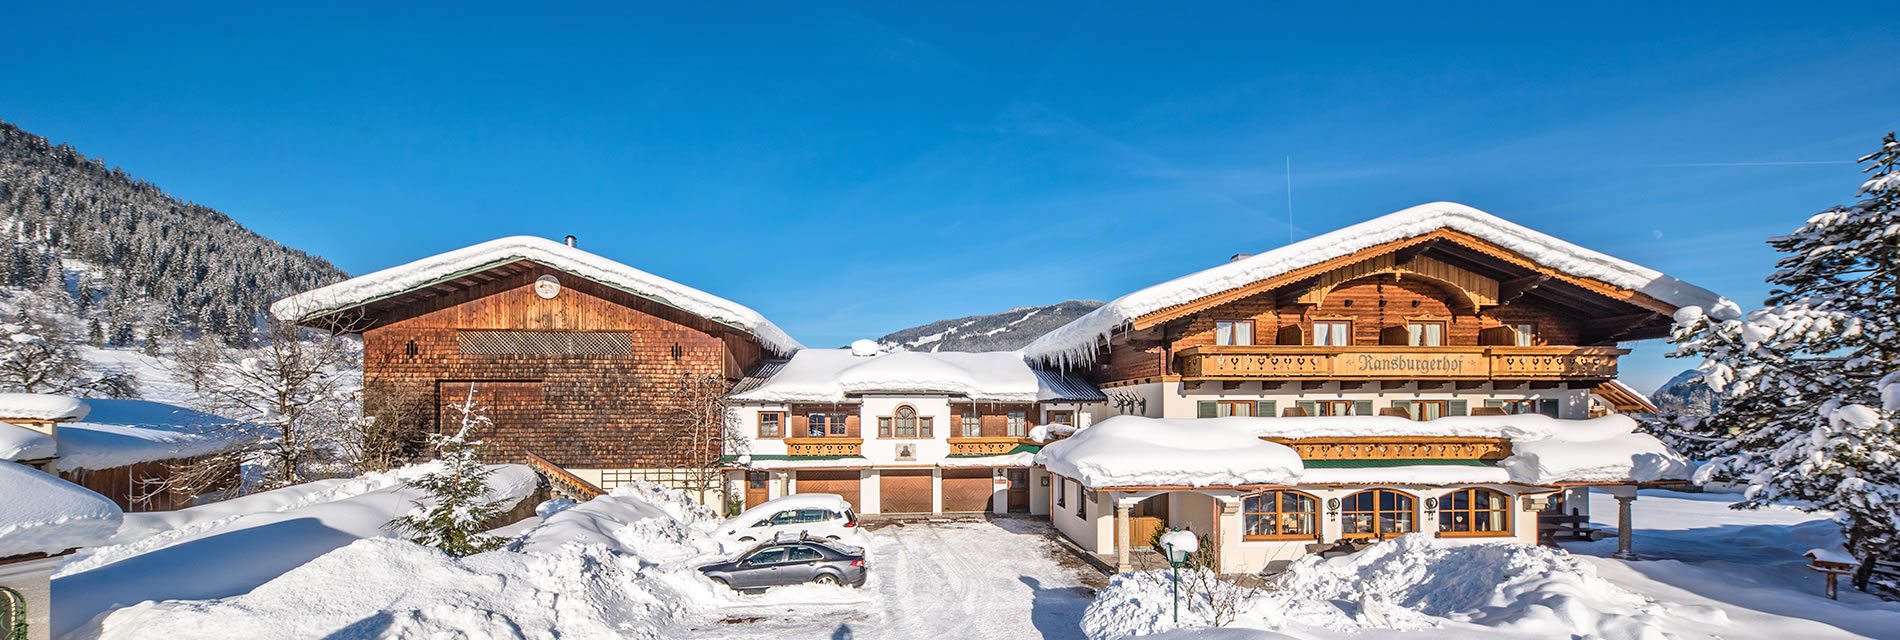 Verbringen Sie einen traumhaften Skiurlaub bei uns im Hotel-Garni Ransburgerhof in Flachau - mitten in Ski amadé